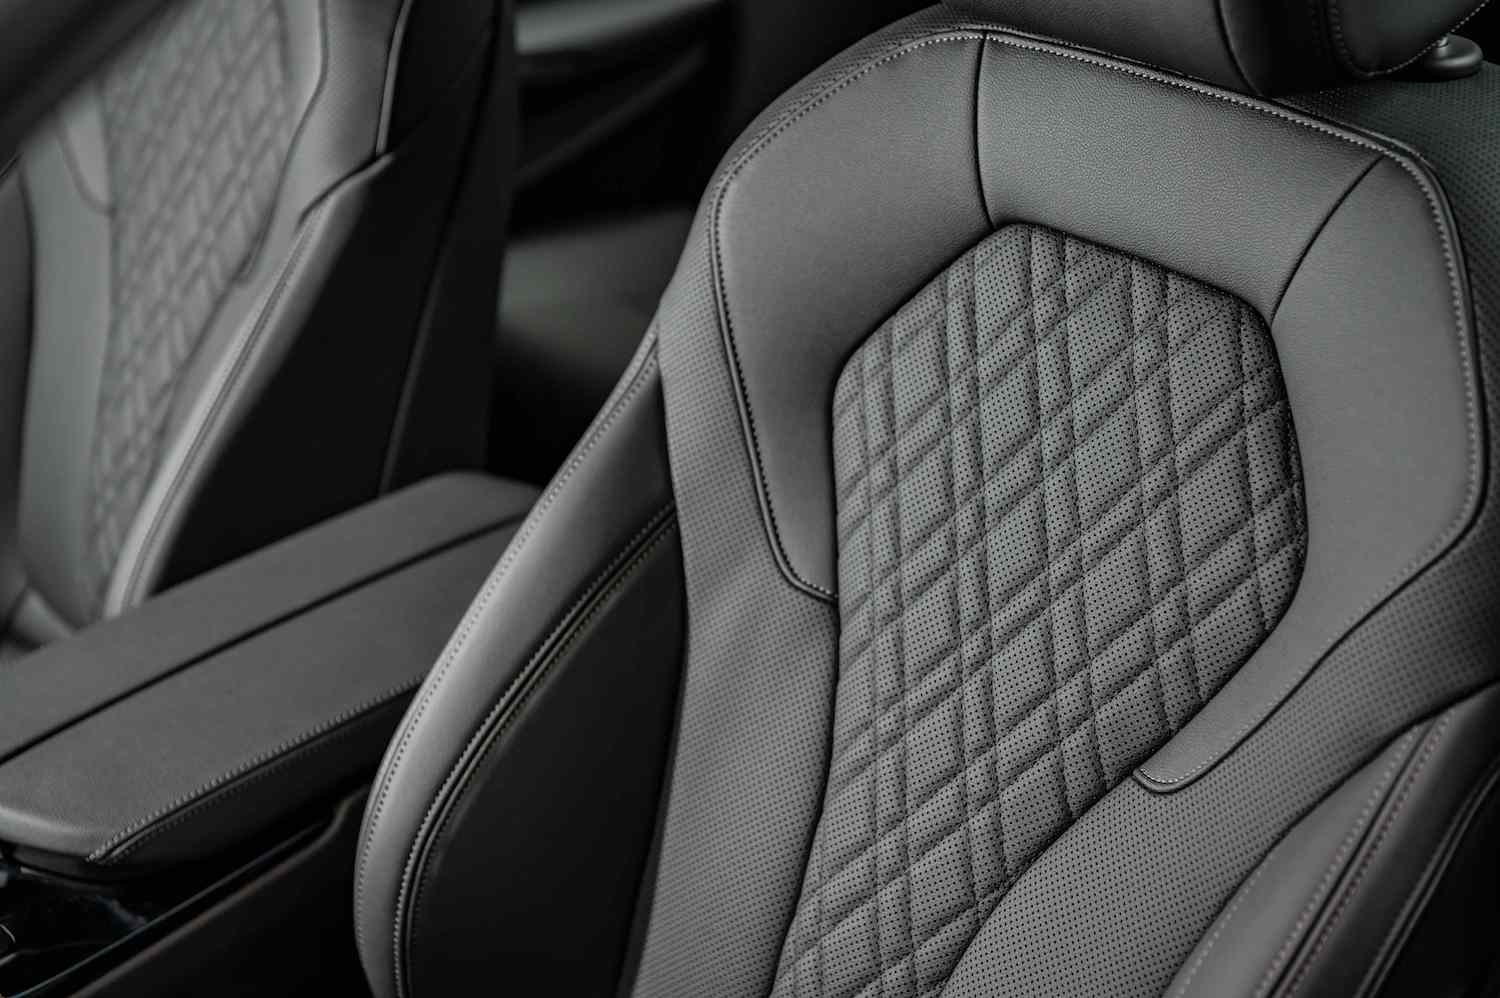 全新 BMW 520i M Sport 標準配備 Sensatec 2.0 皮質包覆並加入椅背透氣孔設計，觸感更為柔軟、舒適，雙前座更搭配細膩縫線織成菱格紋。